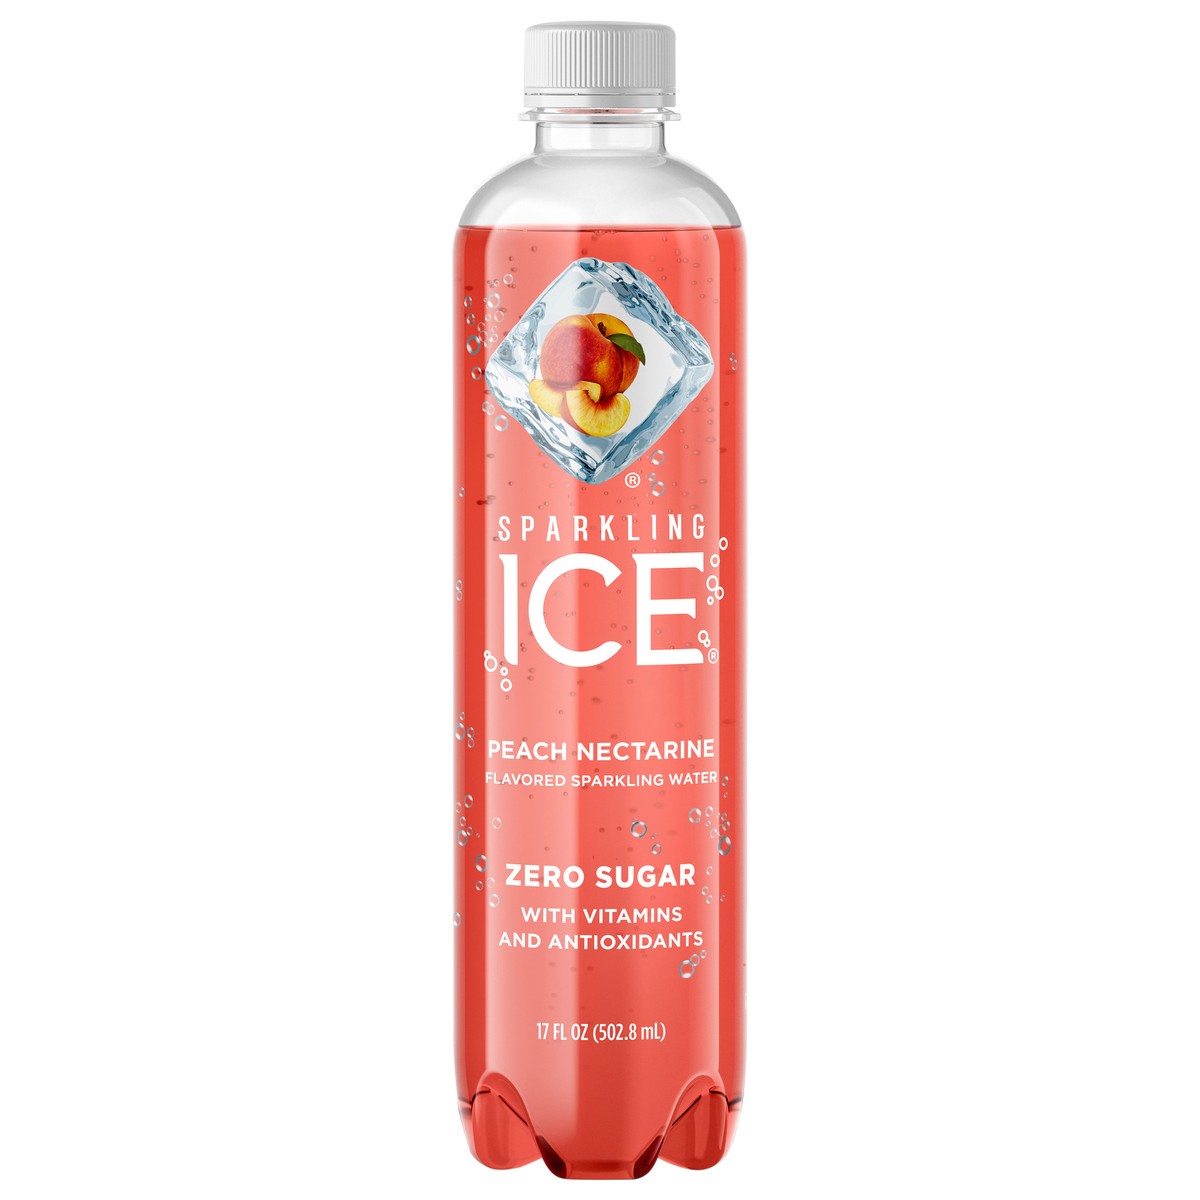 slide 1 of 11, Sparkling ICE Zero Sugar Peach Nectarine Flavored Sparkling Water - 17 fl oz, 17 fl oz